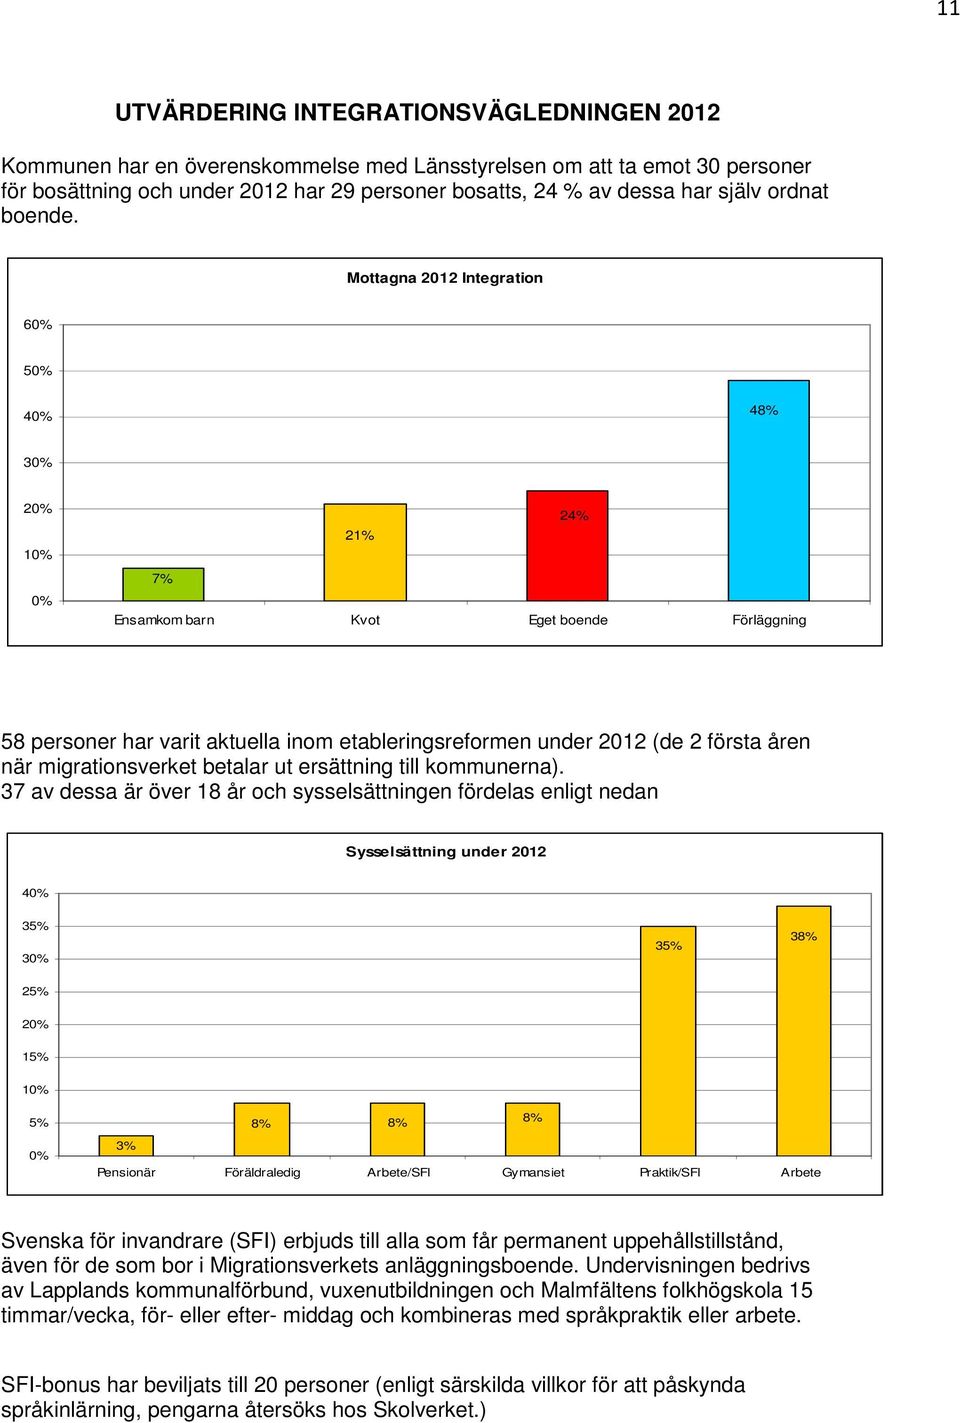 Mottagna 2012 Integration 6 5 4 48% 24% 21% 7% Ensamkom barn Kvot Eget boende Förläggning 58 personer har varit aktuella inom etableringsreformen under 2012 (de 2 första åren när migrationsverket